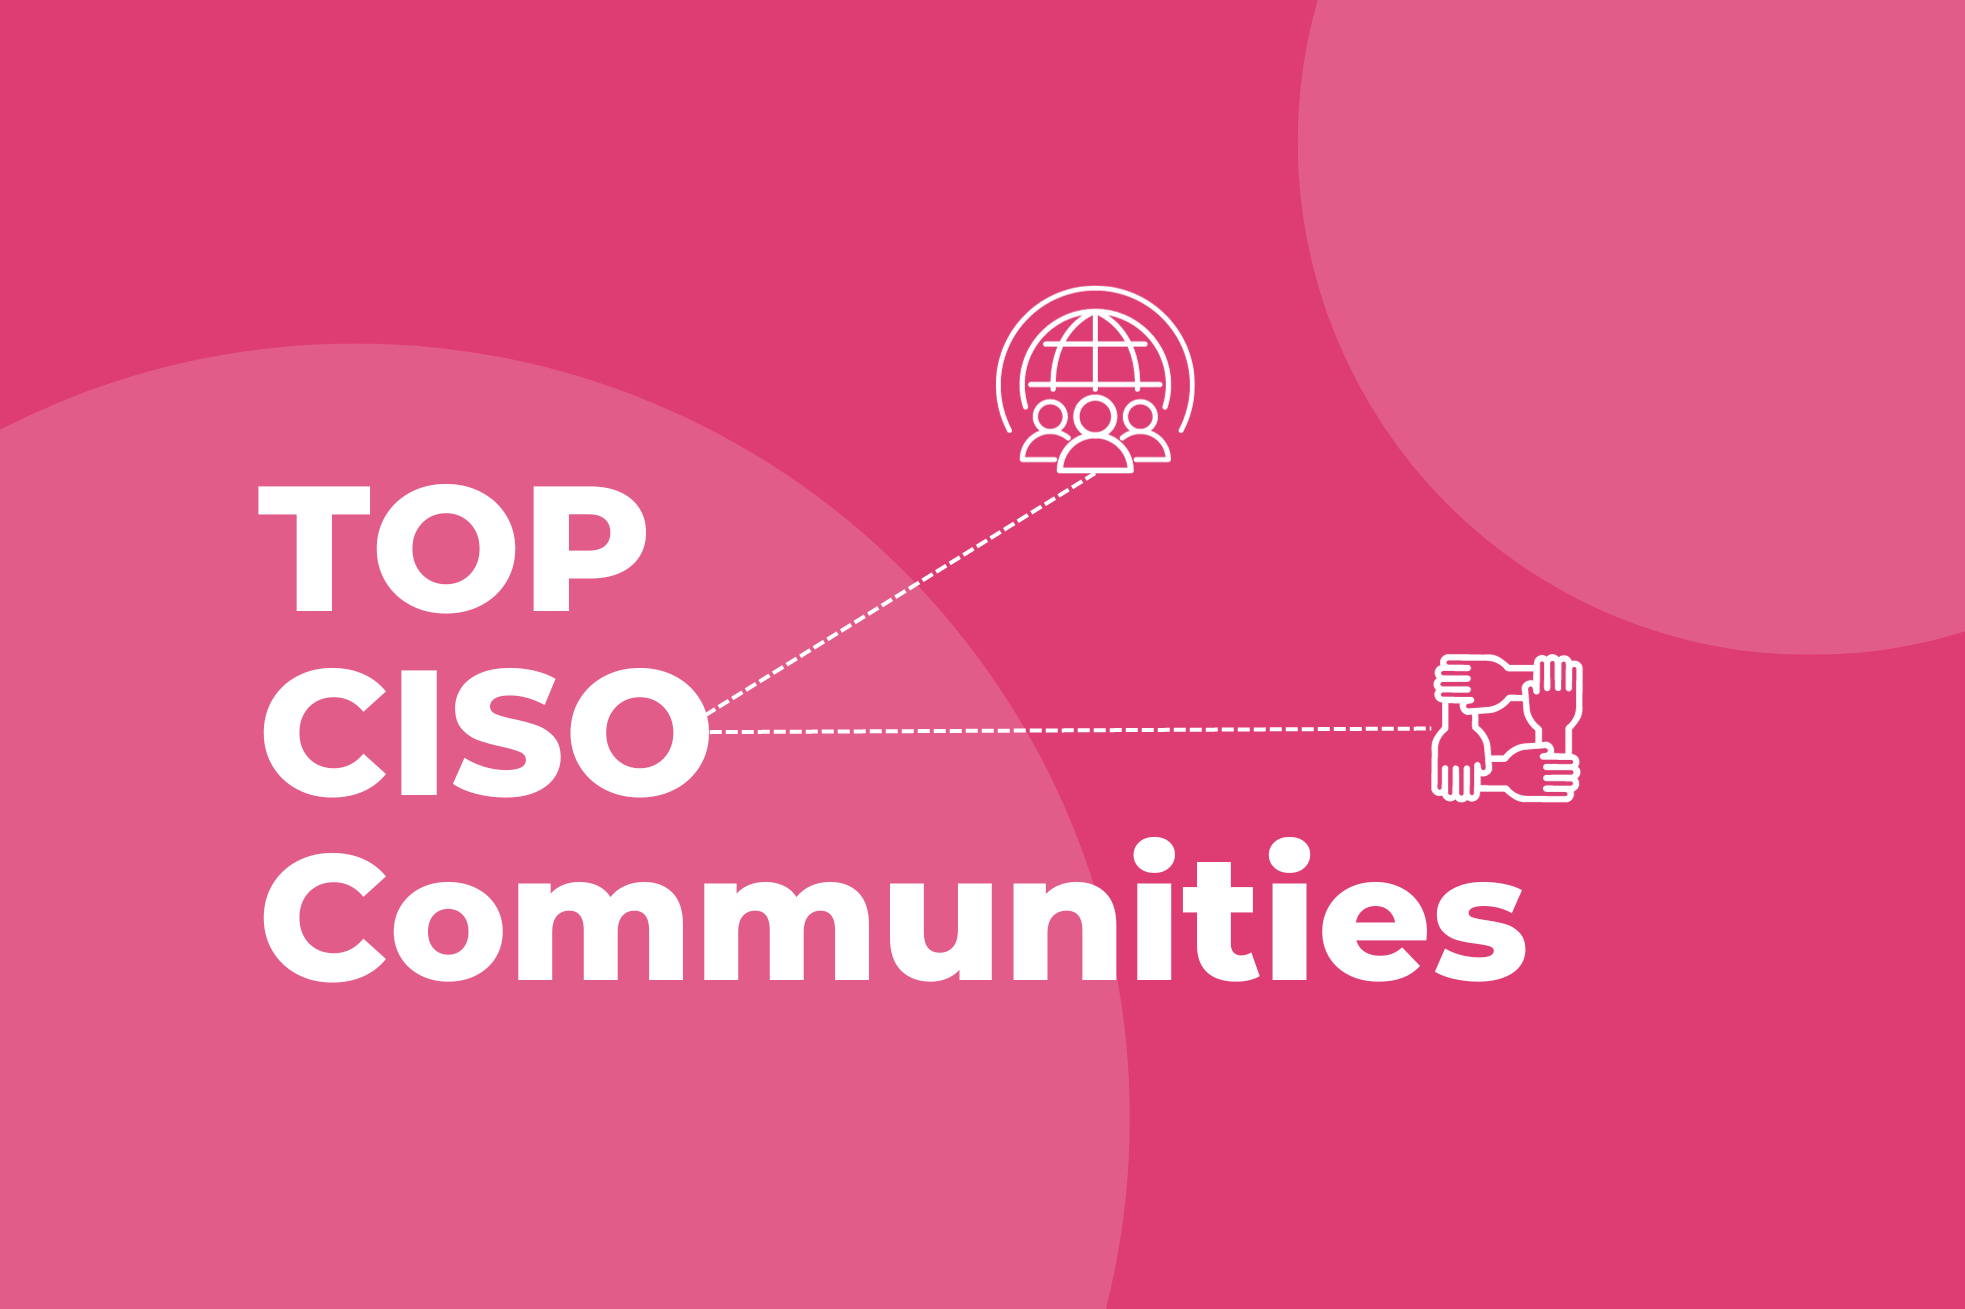 Top CISO communities